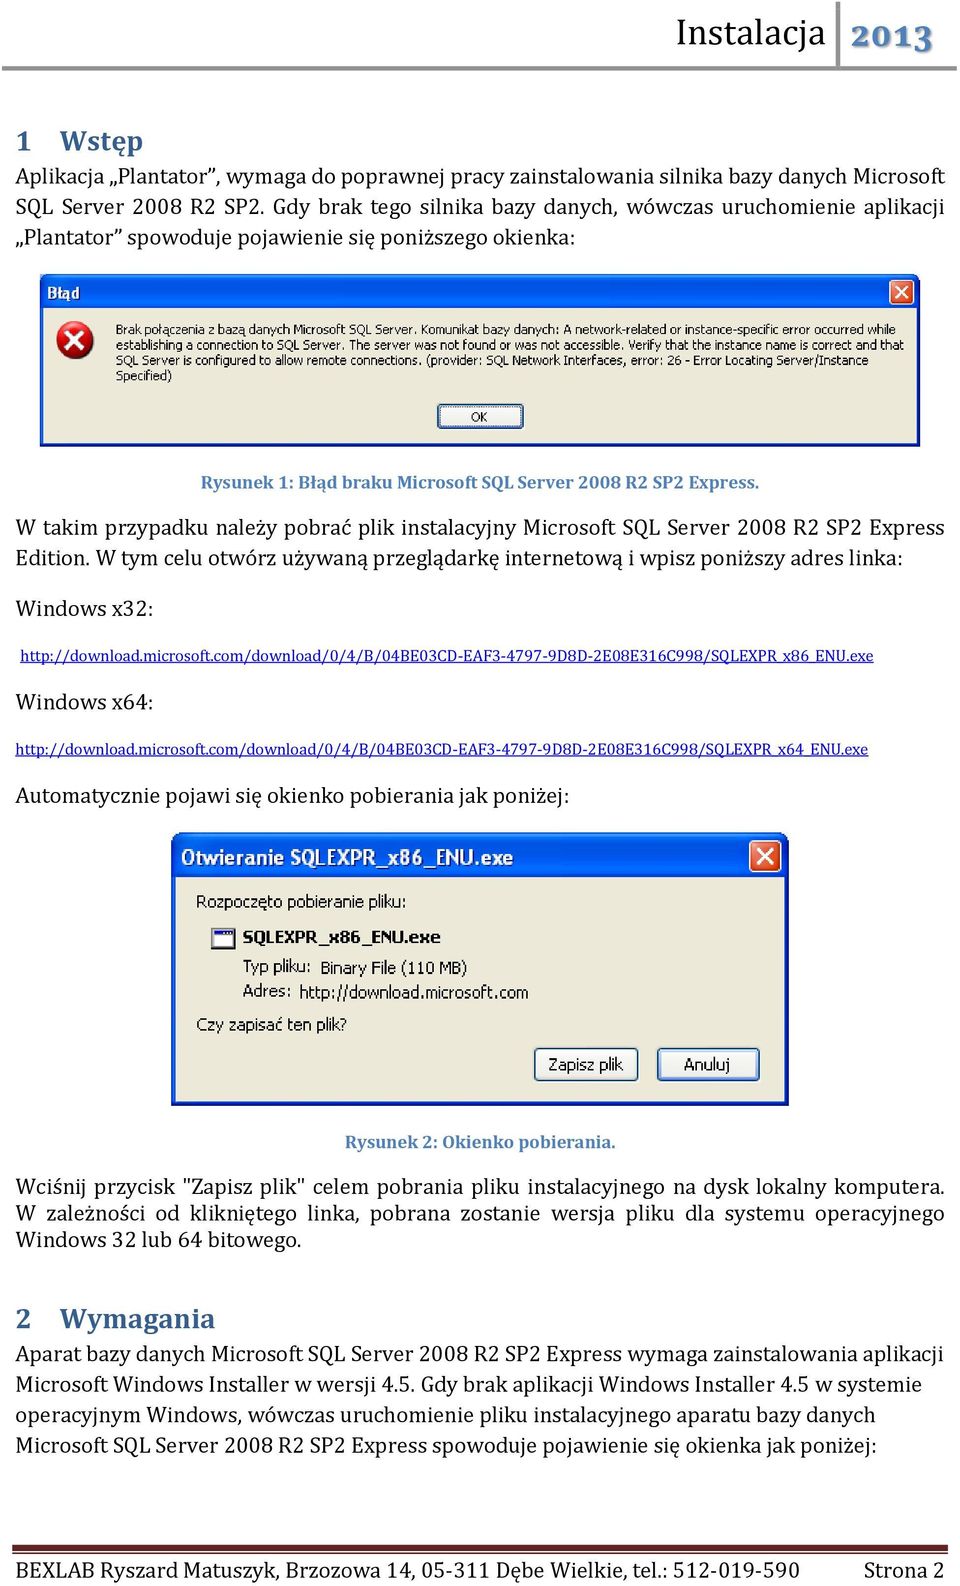 W takim przypadku należy pobrać plik instalacyjny Microsoft SQL Server 2008 R2 SP2 Express Edition.